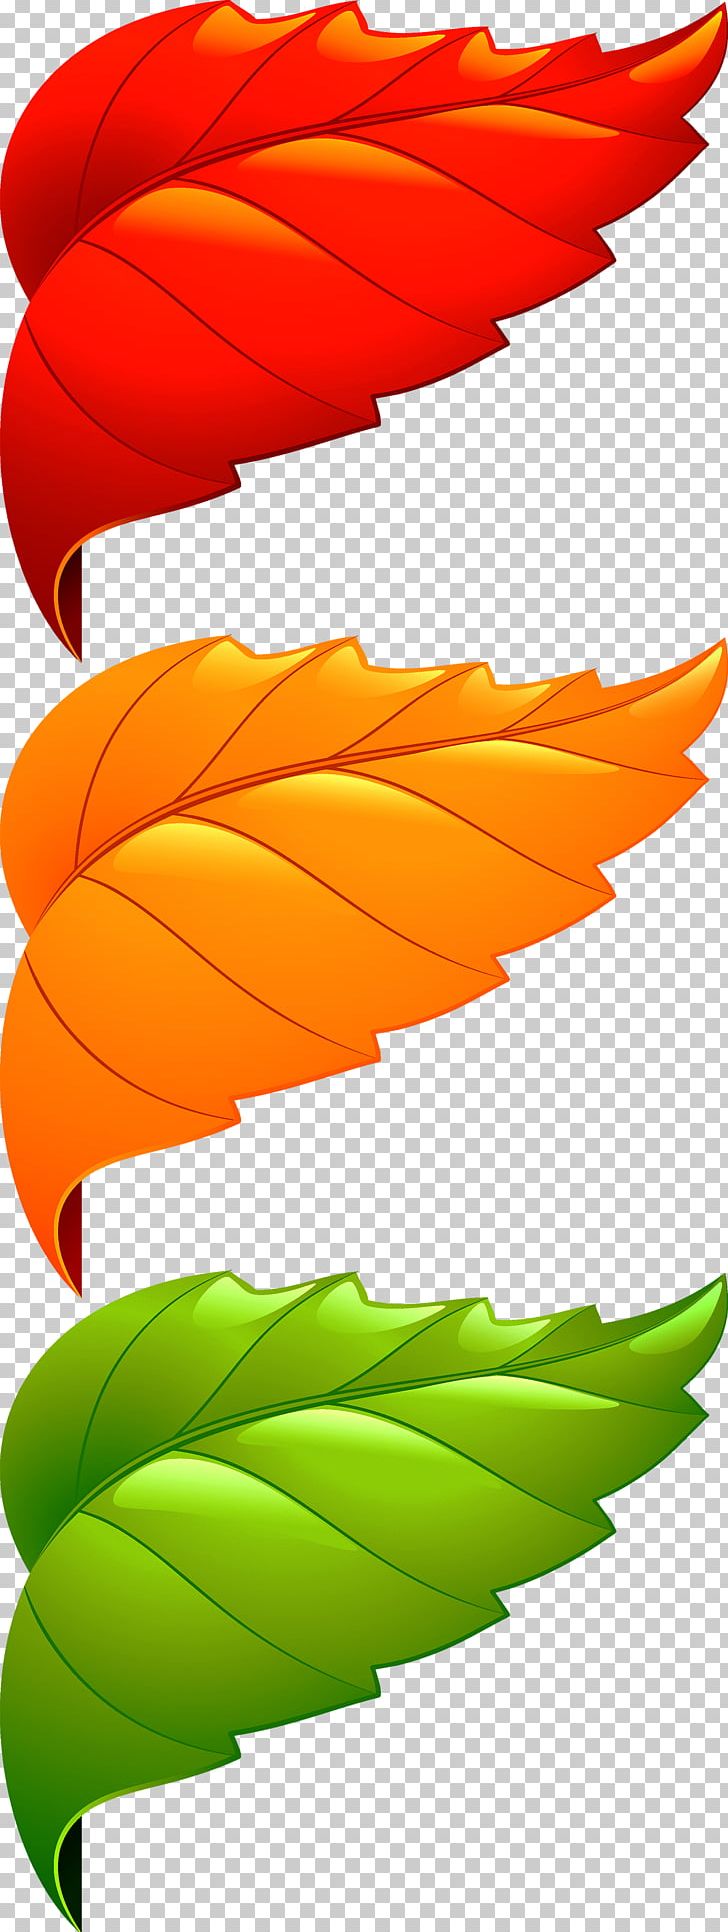 Maple Leaf Adobe Illustrator PNG, Clipart, Adobe Illustrator, Border Texture, Corner, Crimping, Decoration Free PNG Download